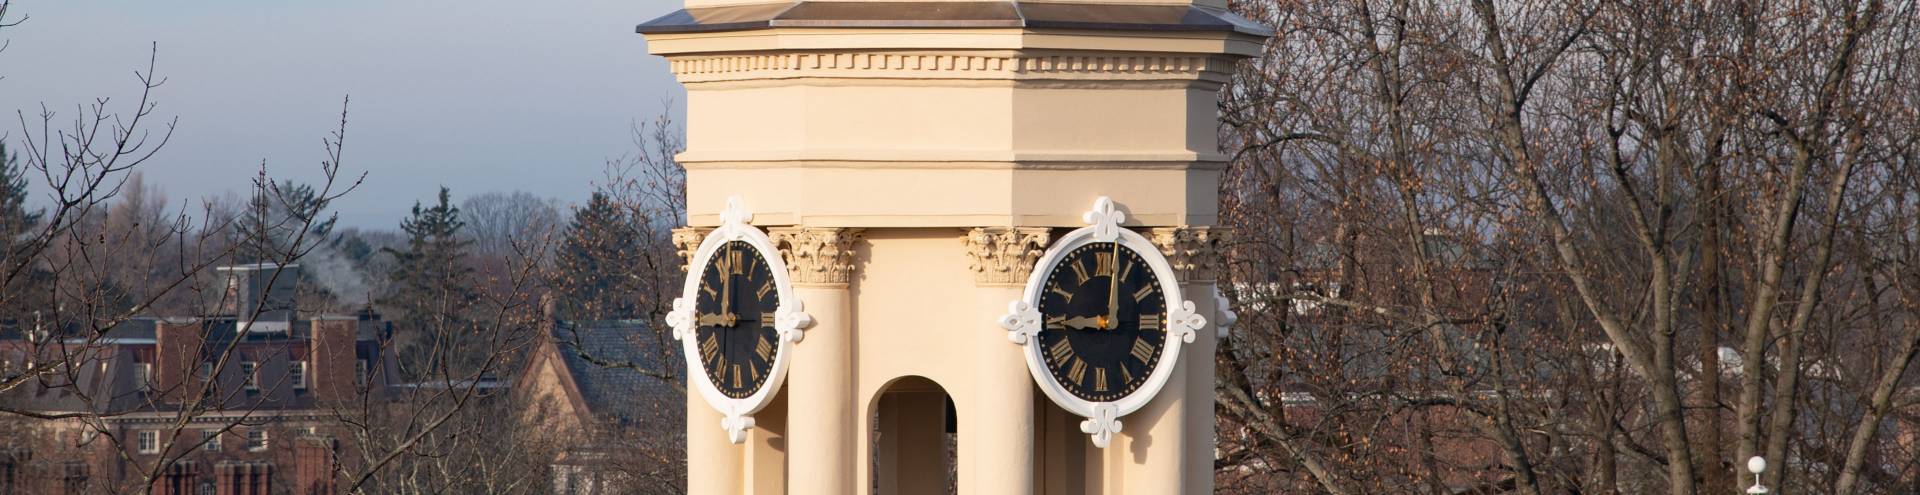 Clocks on Nassau Hall cupola